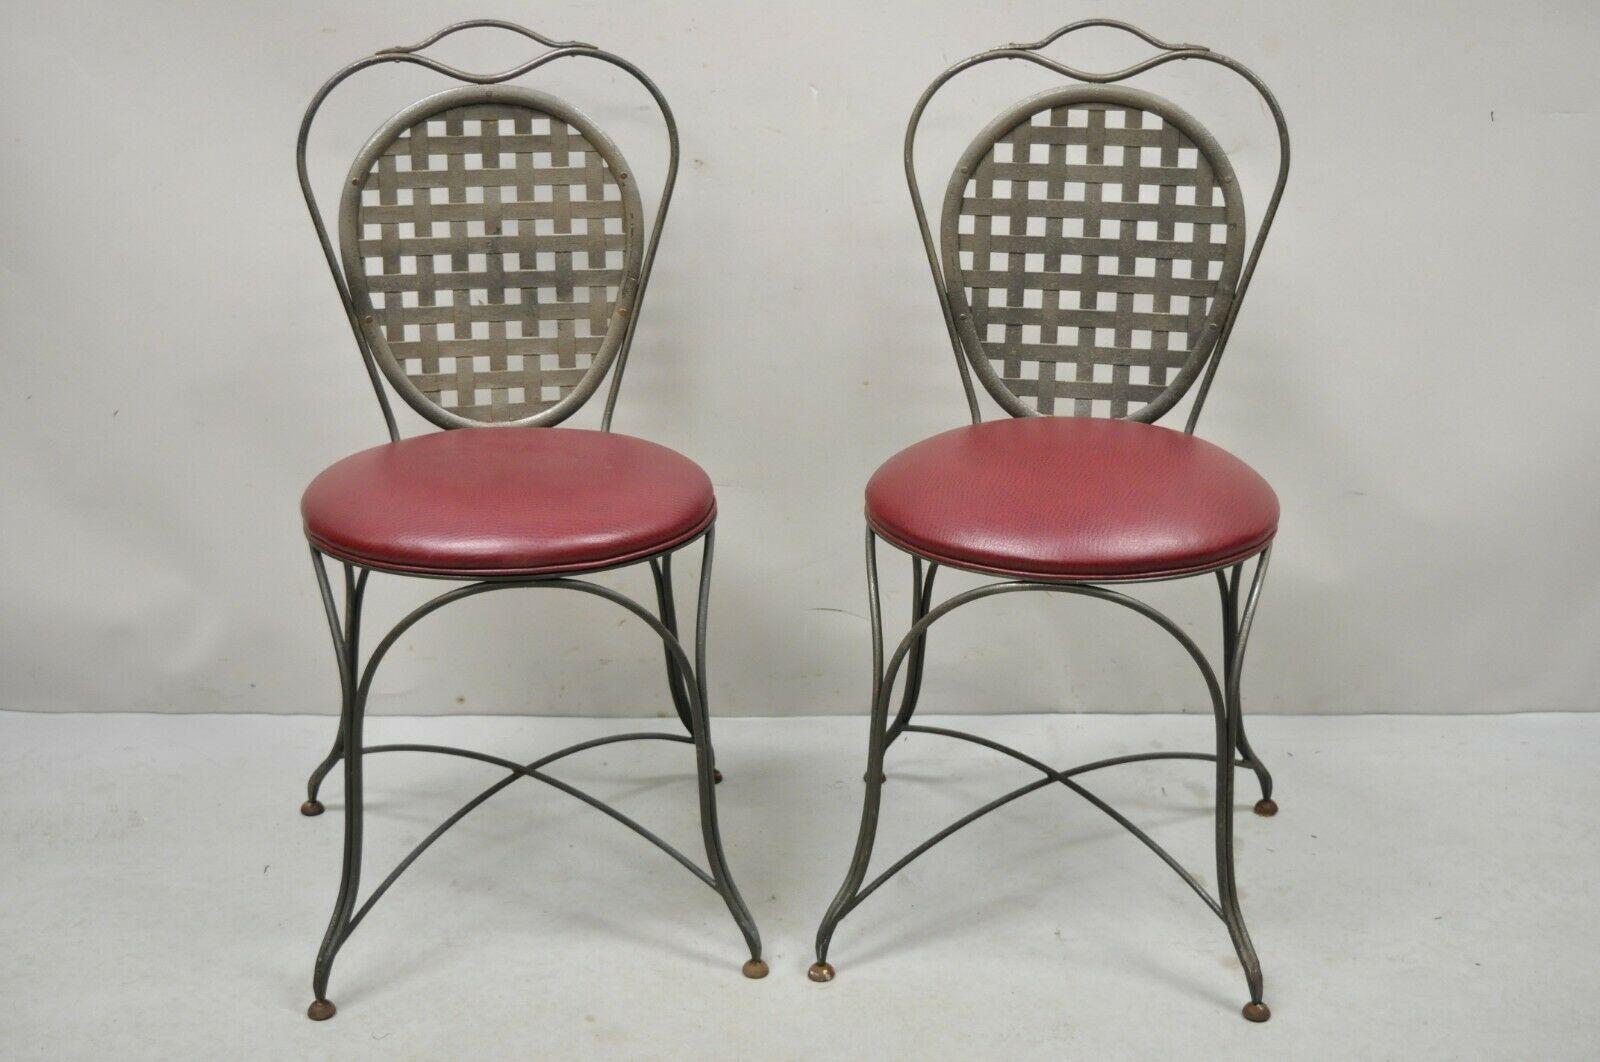 Italienische schmiedeeiserne runde Beistellstühle im Regency-Stil mit Gitter im Sonnenraum-Stil – ein Paar. Der Artikel verfügt über eine durchbrochene Gitterrückenlehne, einen Strebenfuß, runde, mit rotem Vinyl gepolsterte Sitze, hochwertige